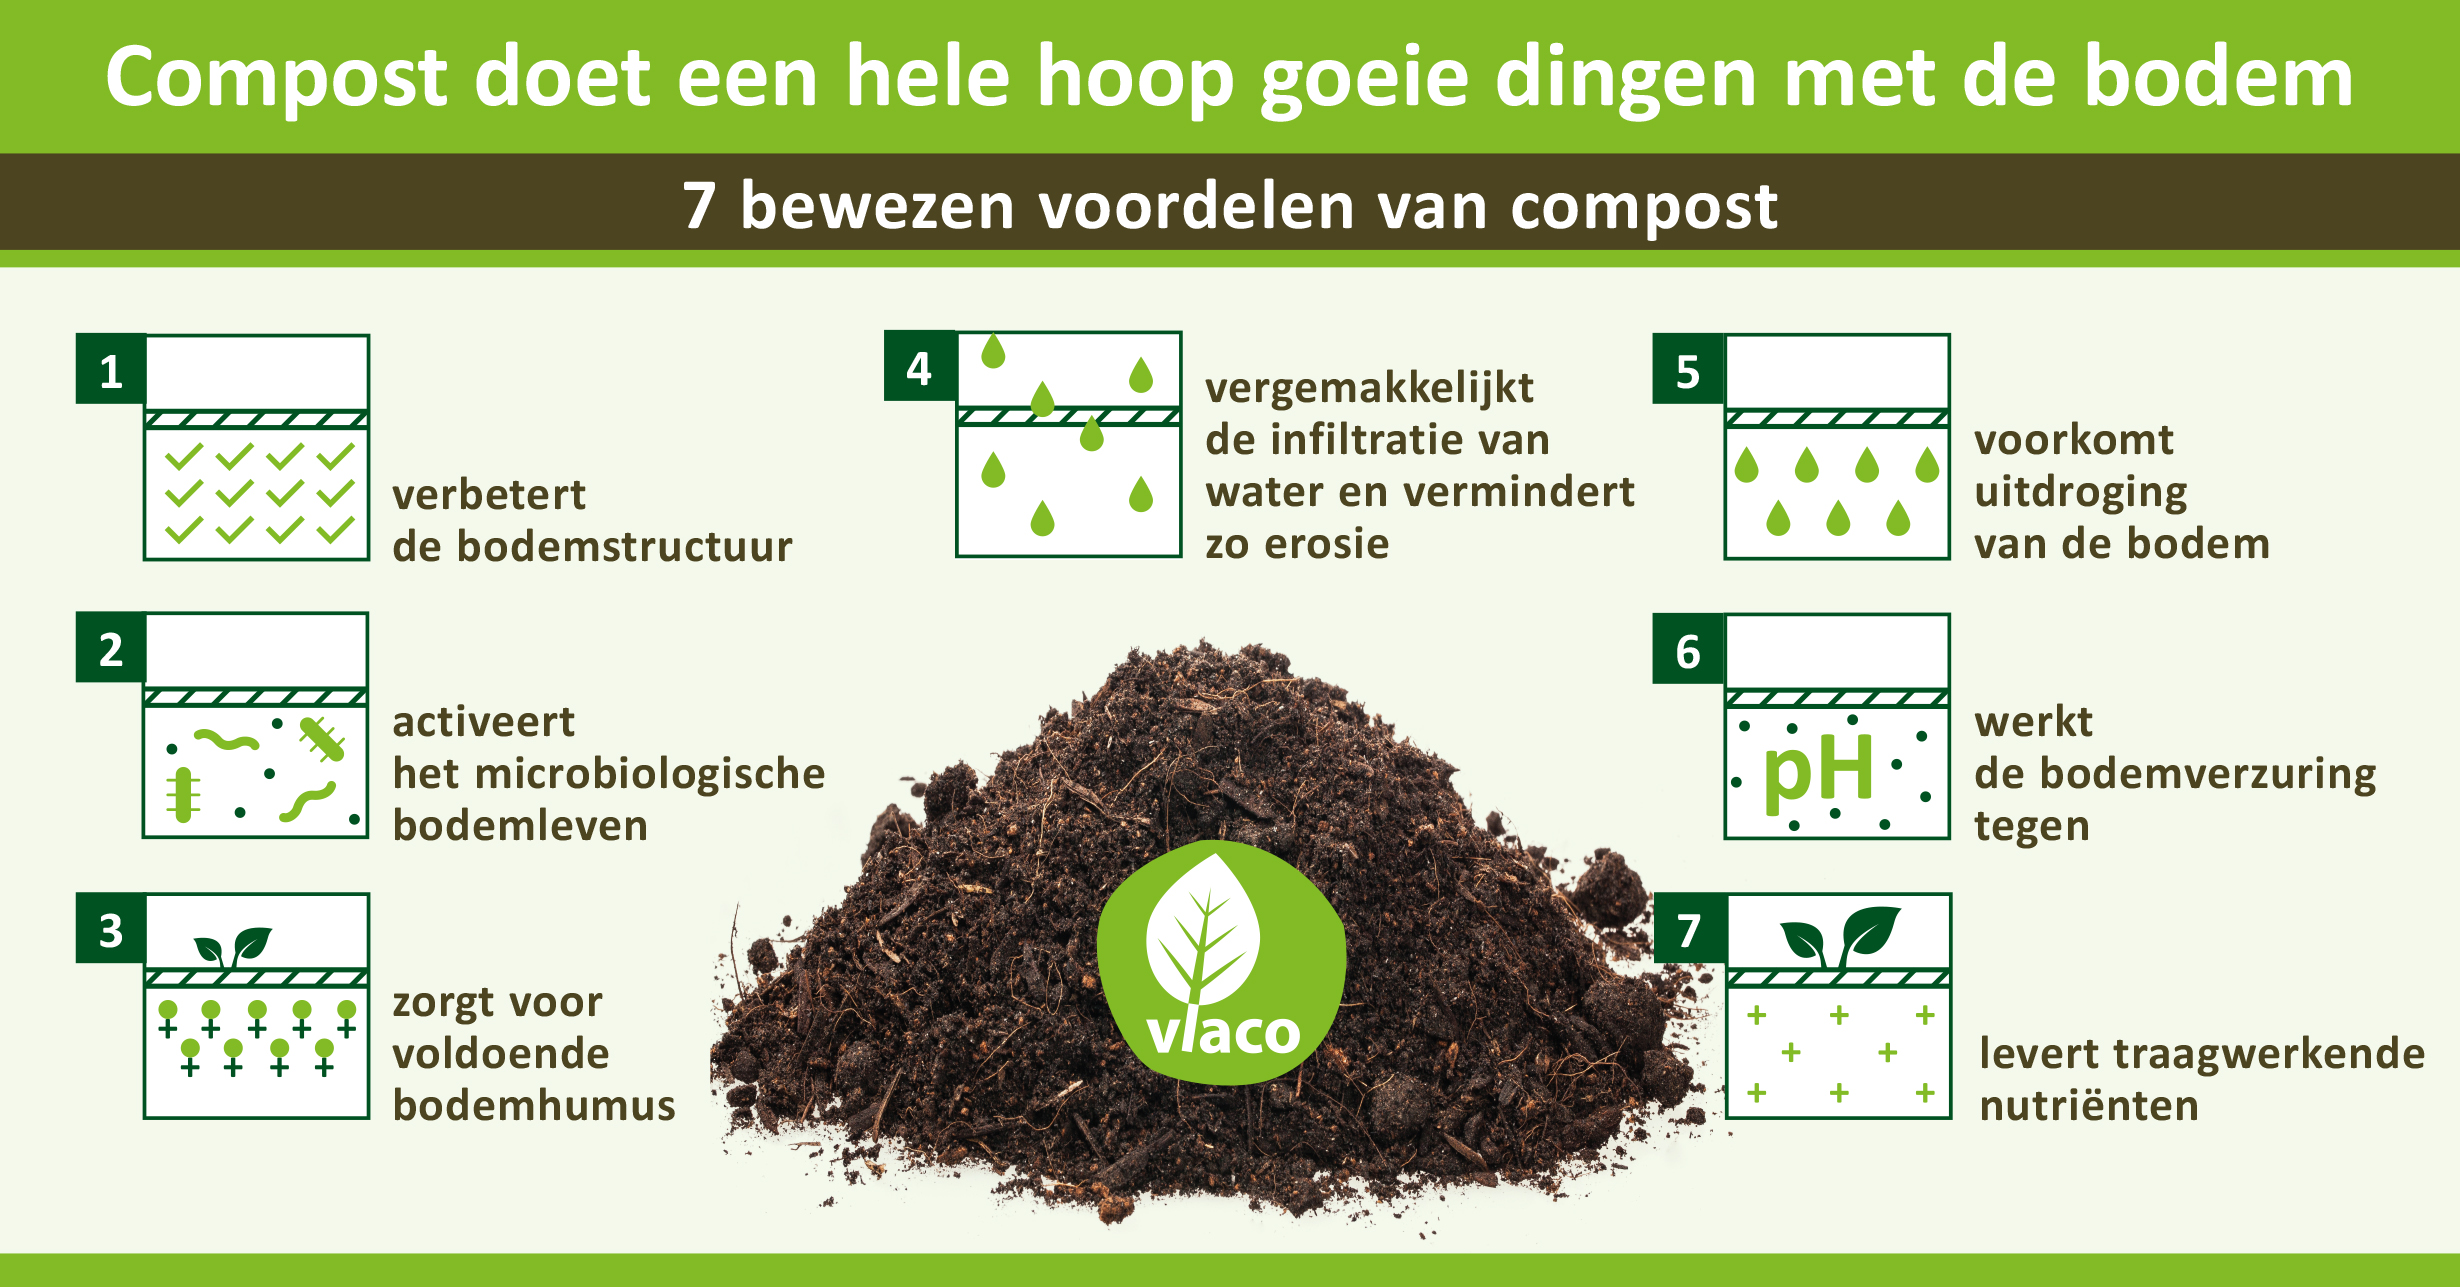 7 bewezen voordelen van compost